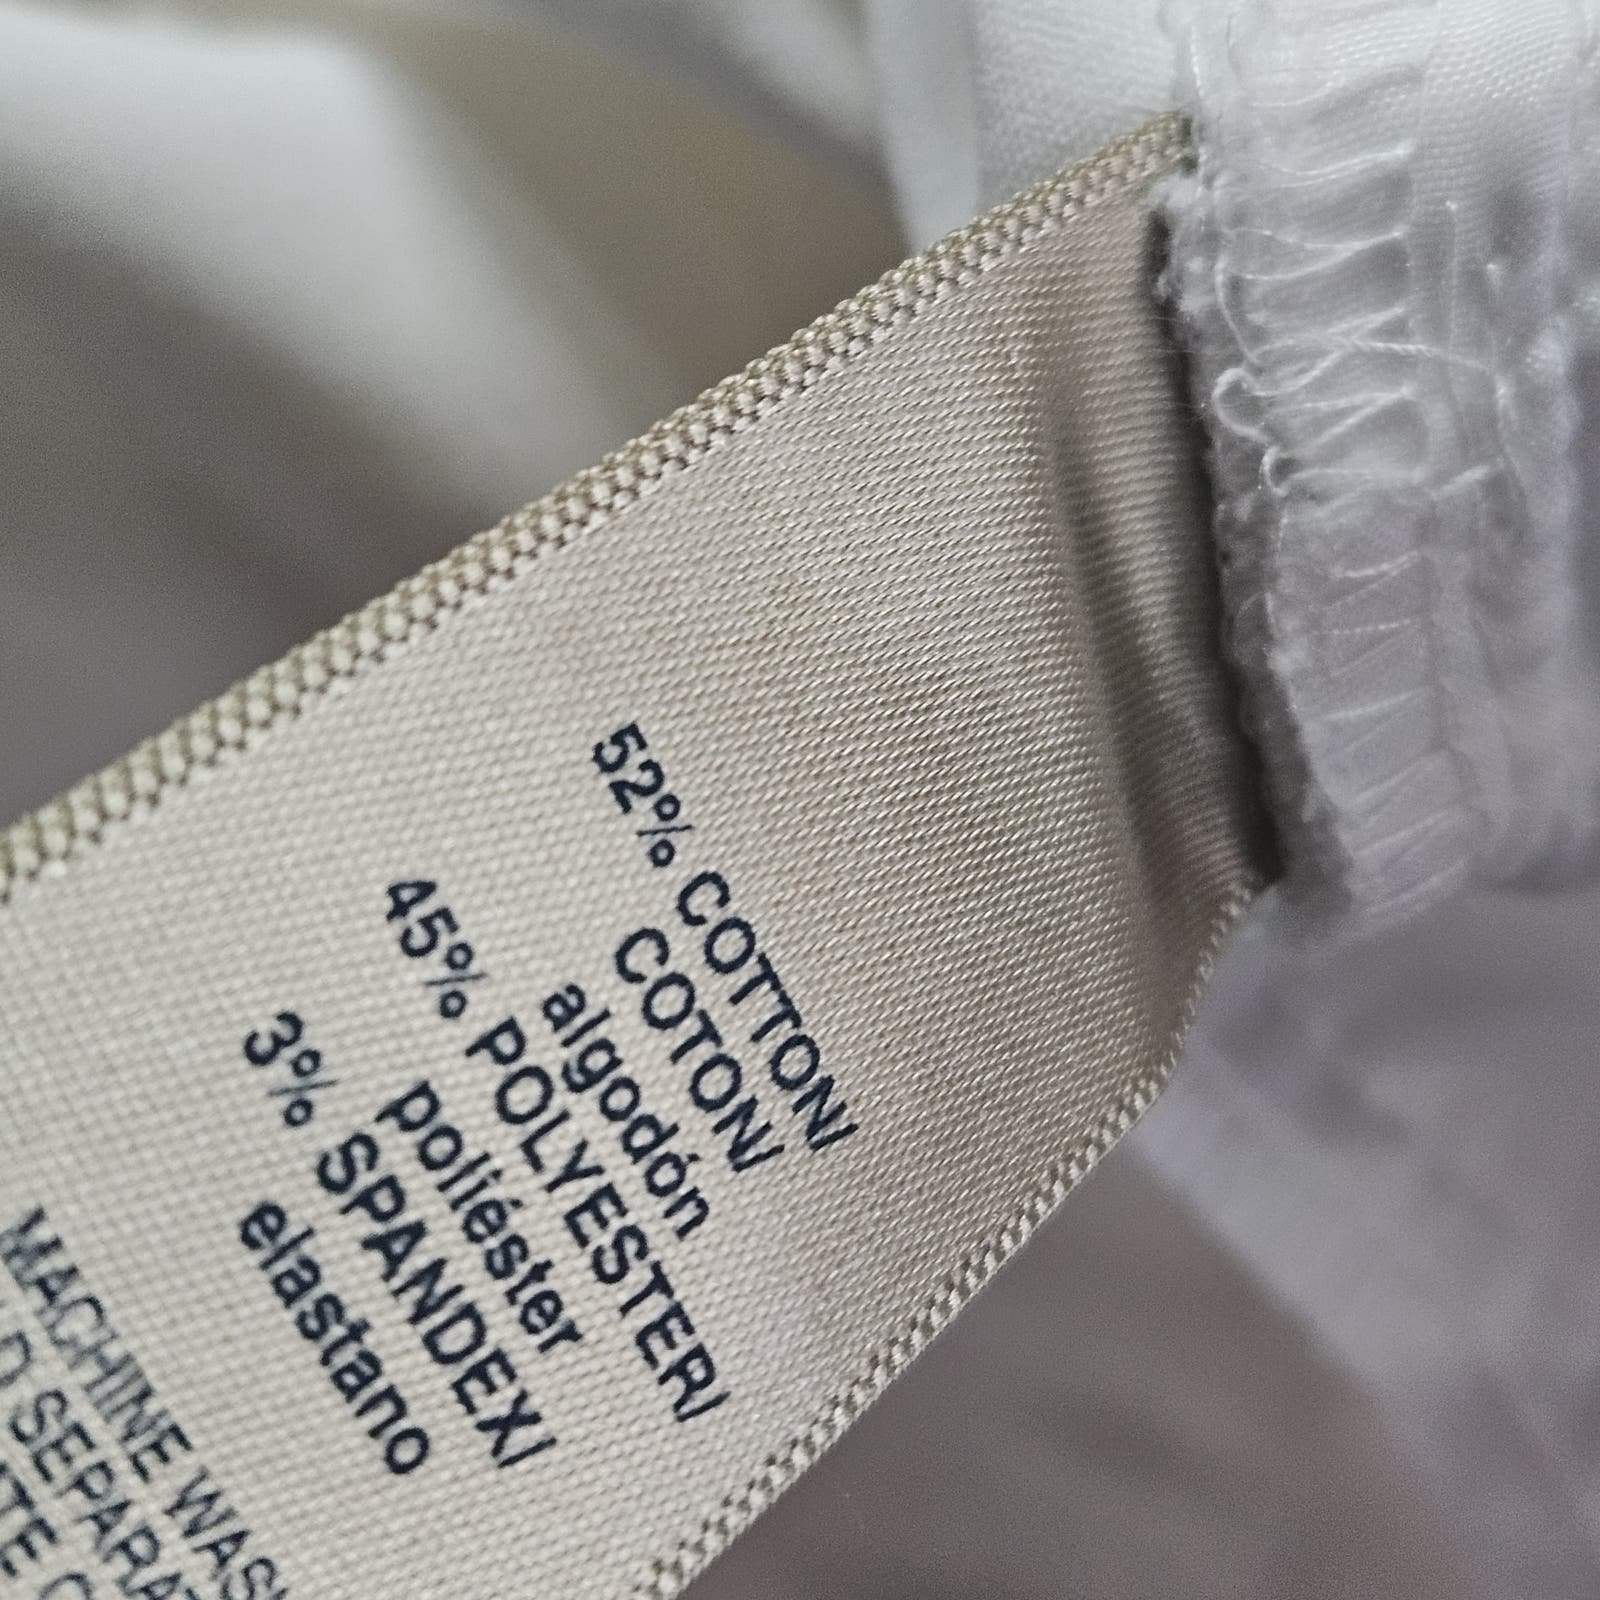 Discounted White Cropped Dress Pants Size 14 iZdqQtoKM Cheap